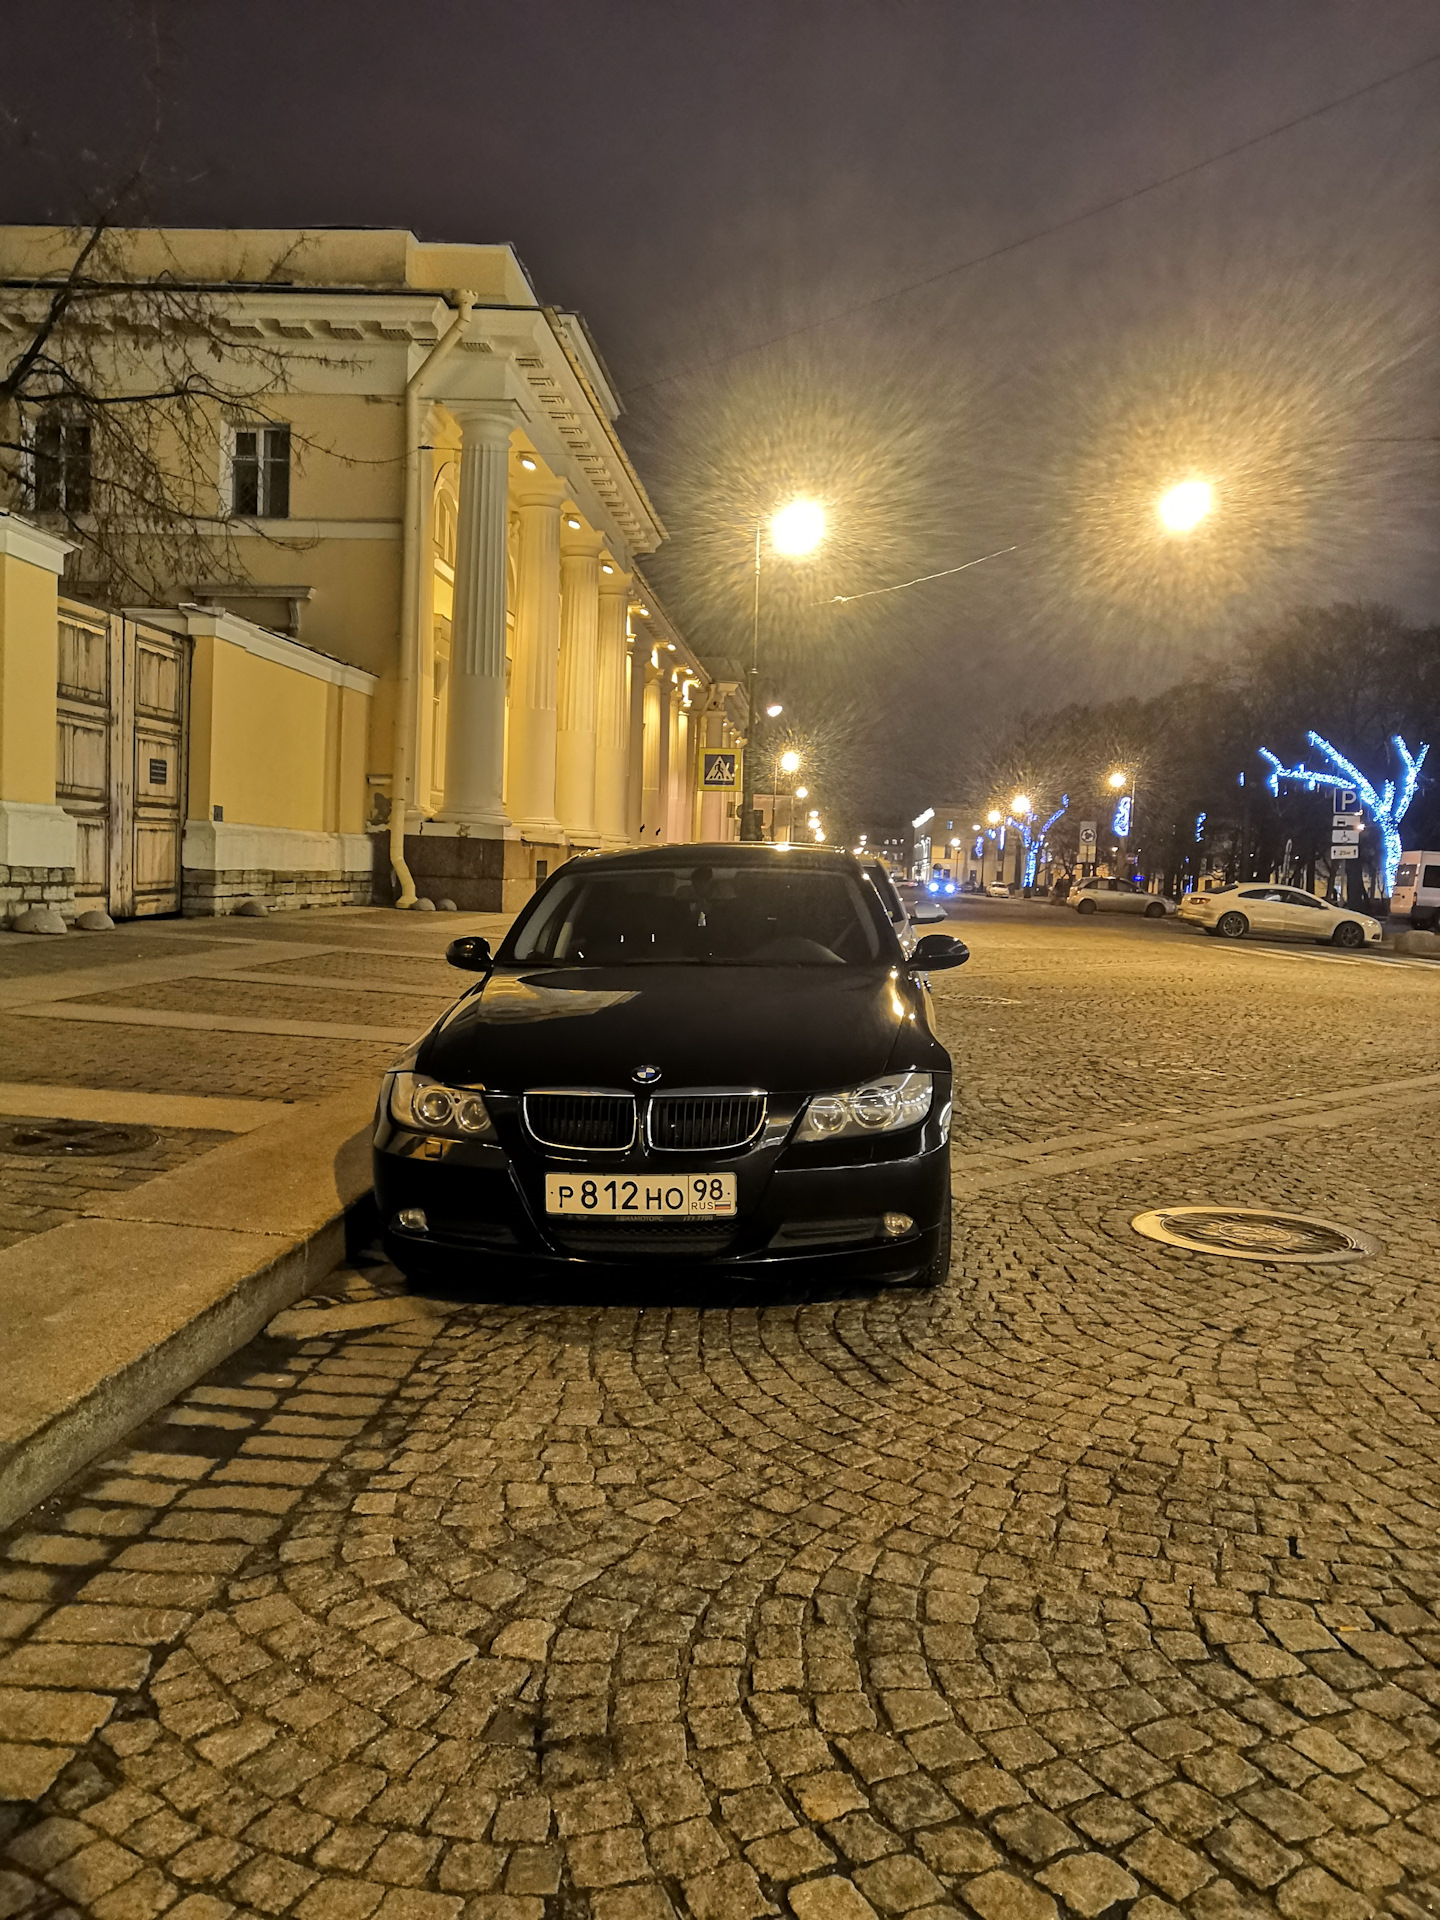 Вечер улица машины. БМВ м5 в городе. BMW м5 на улице. Машина ночь город. Автомобиль ночью.